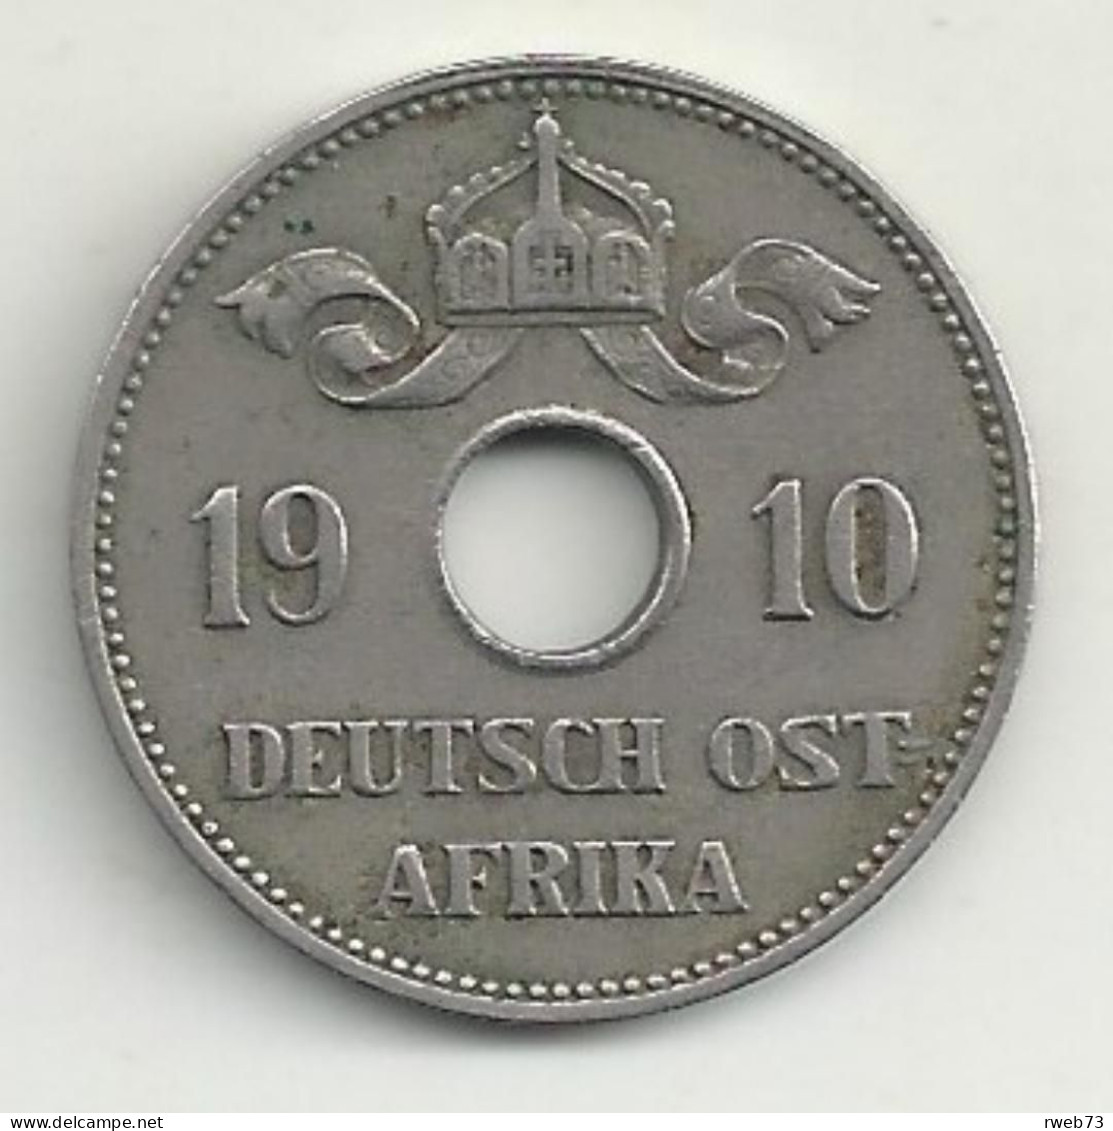 AFRIQUE De L'EST (ex Colonie Allemande) - 10 Heller - 1910 - TB/TTB - German East Africa